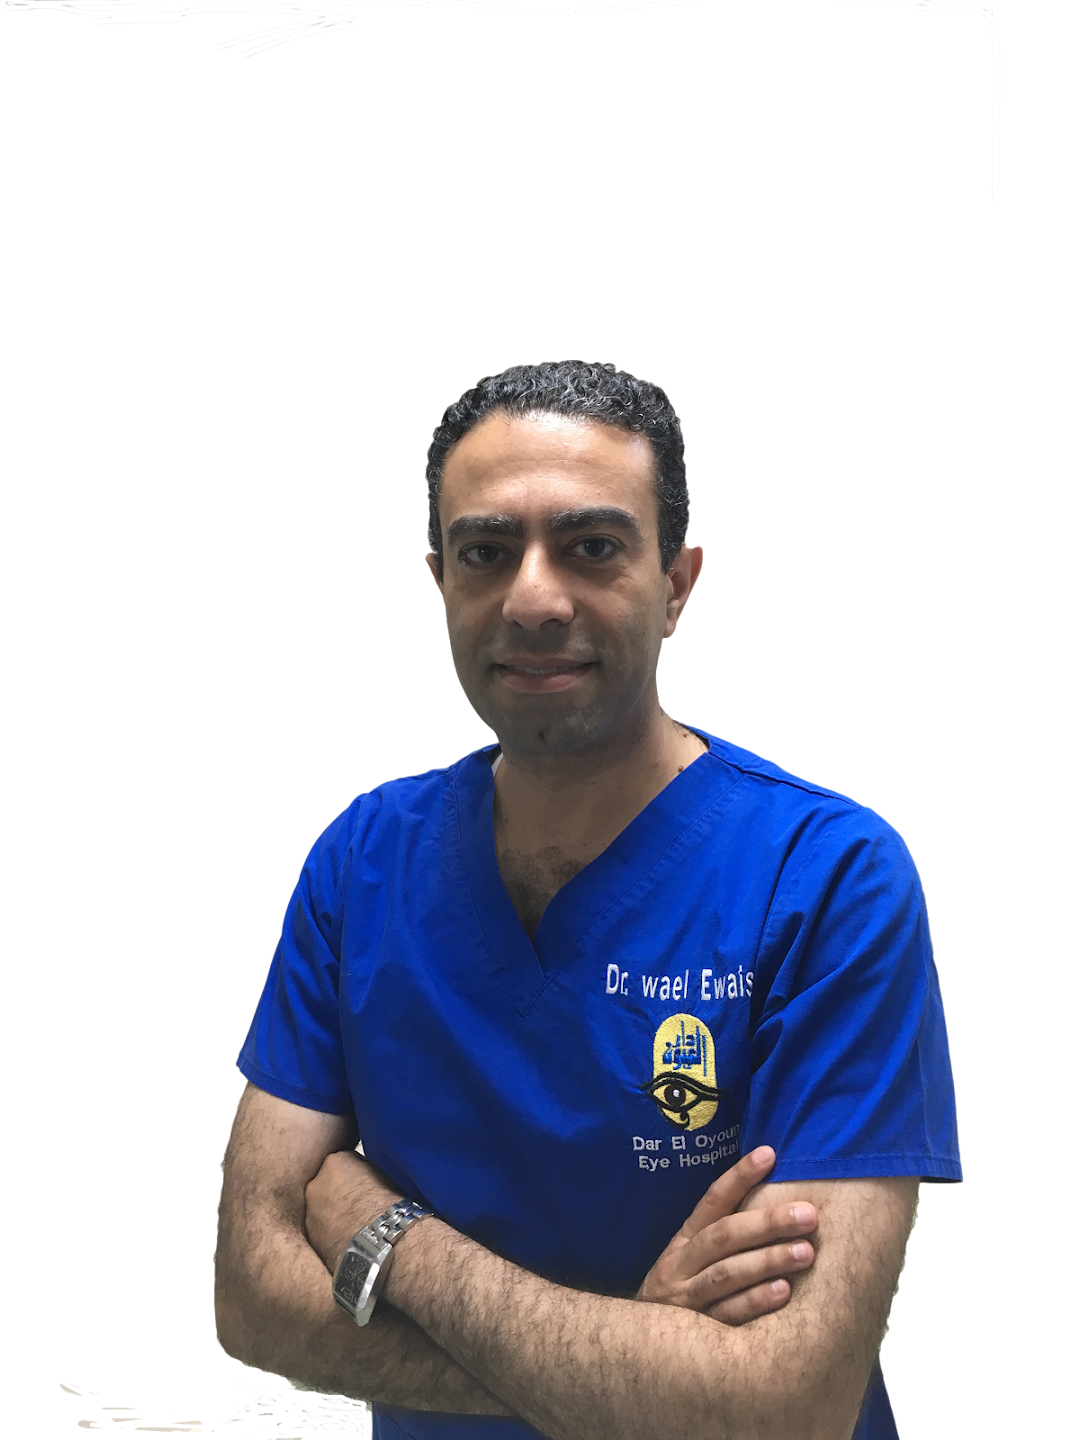 Dr. Wael Ewais